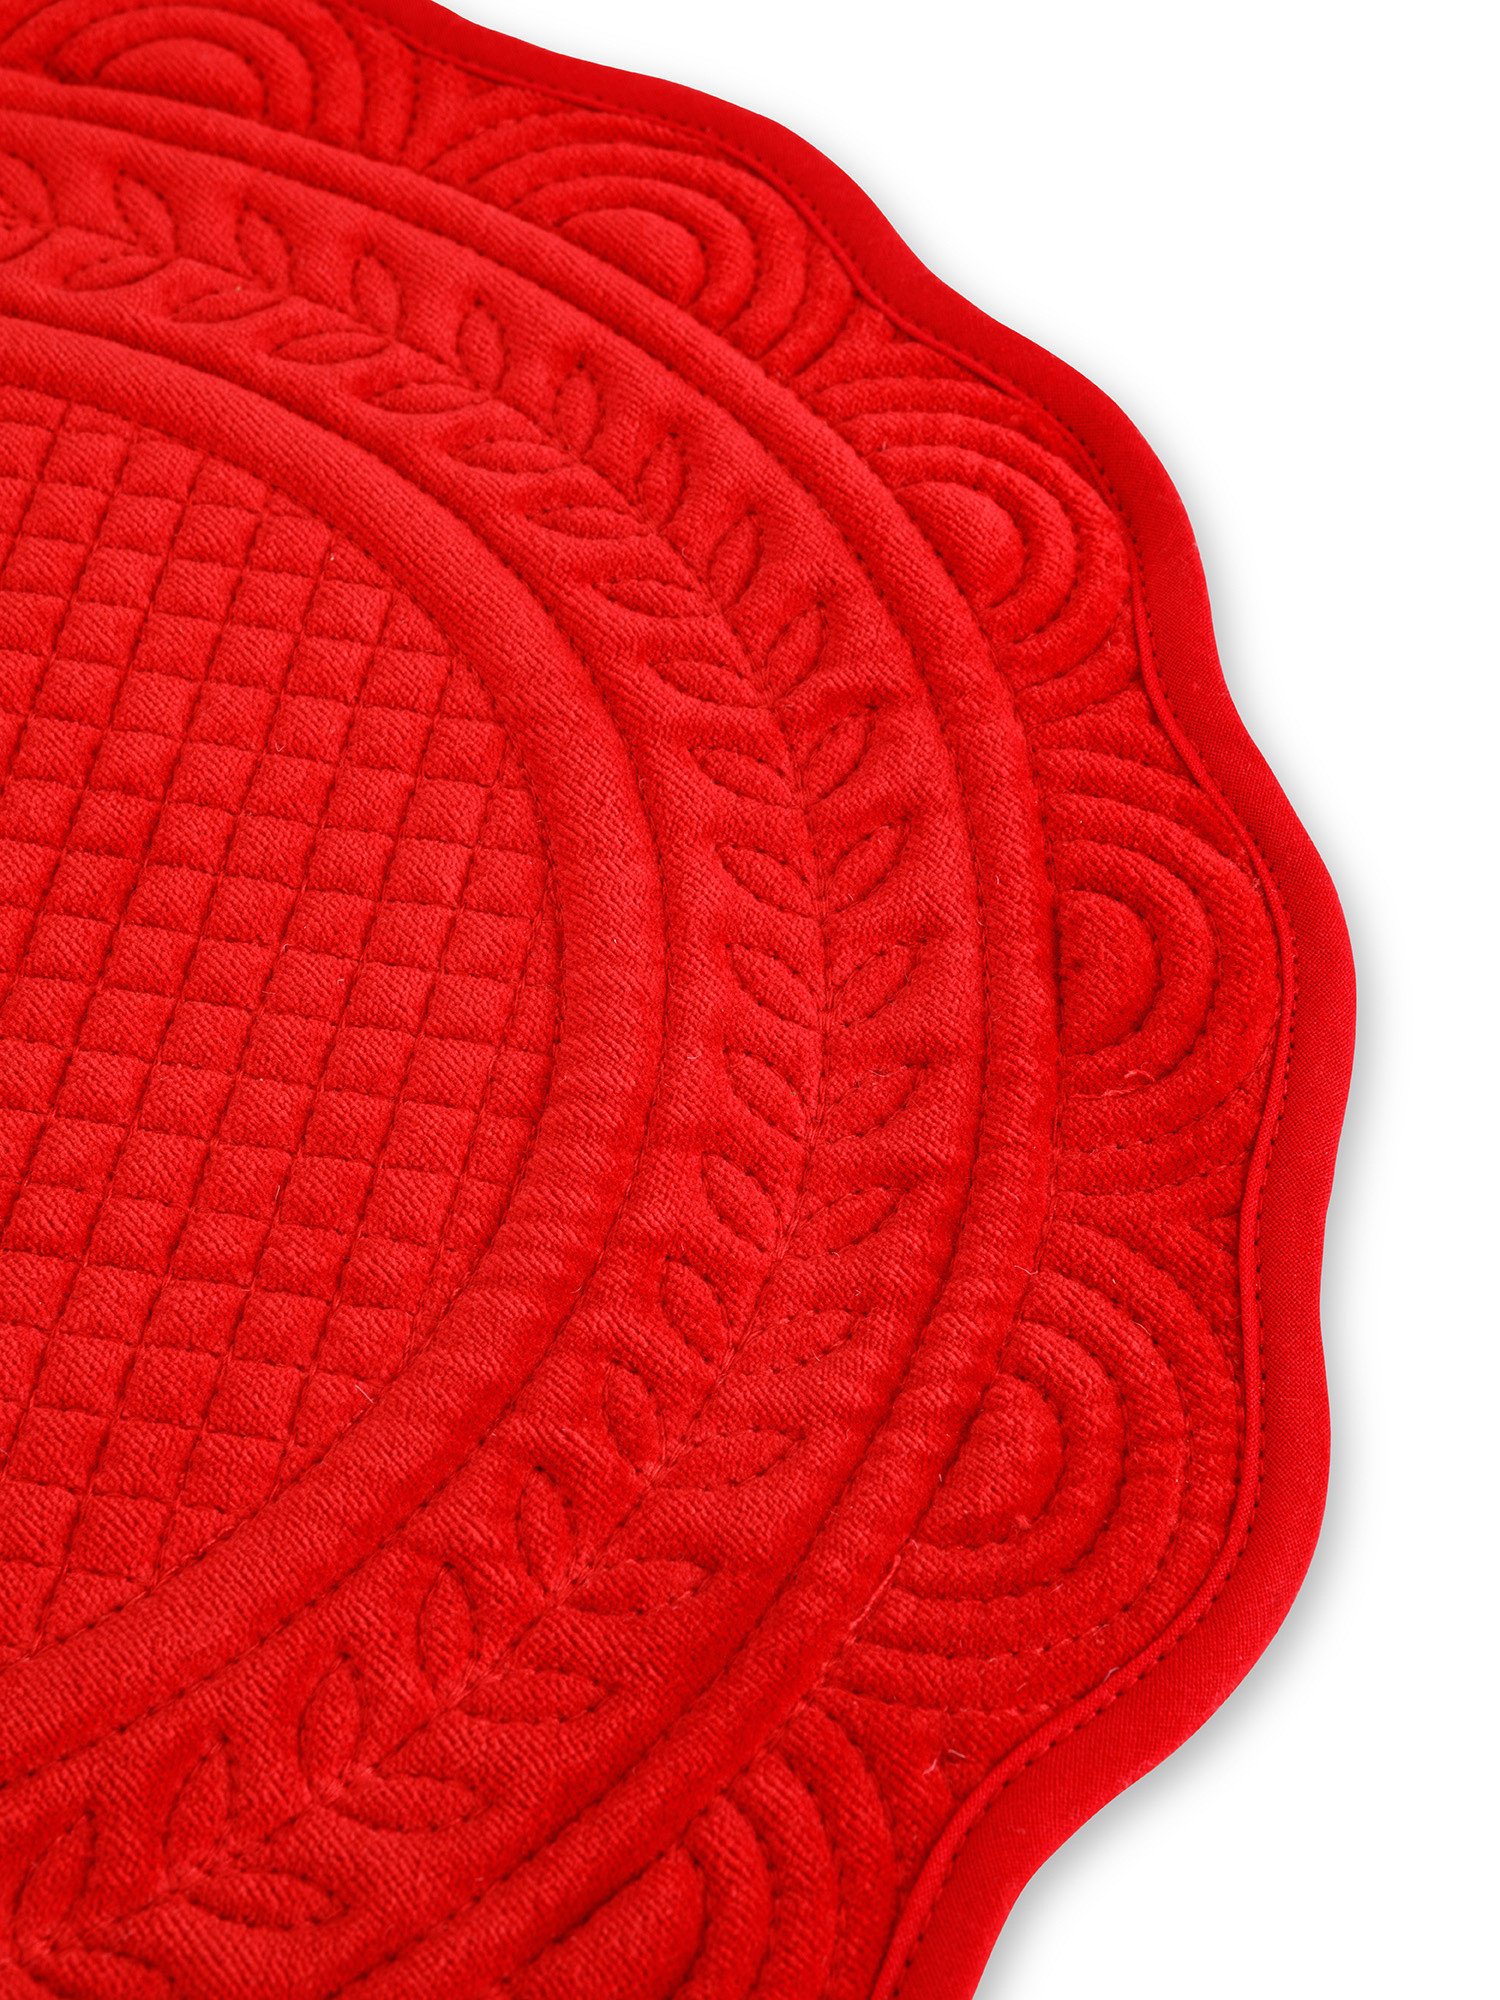 Tovaglietta trapuntata rotonda velluto di cotone tinta unita, Rosso, large image number 1